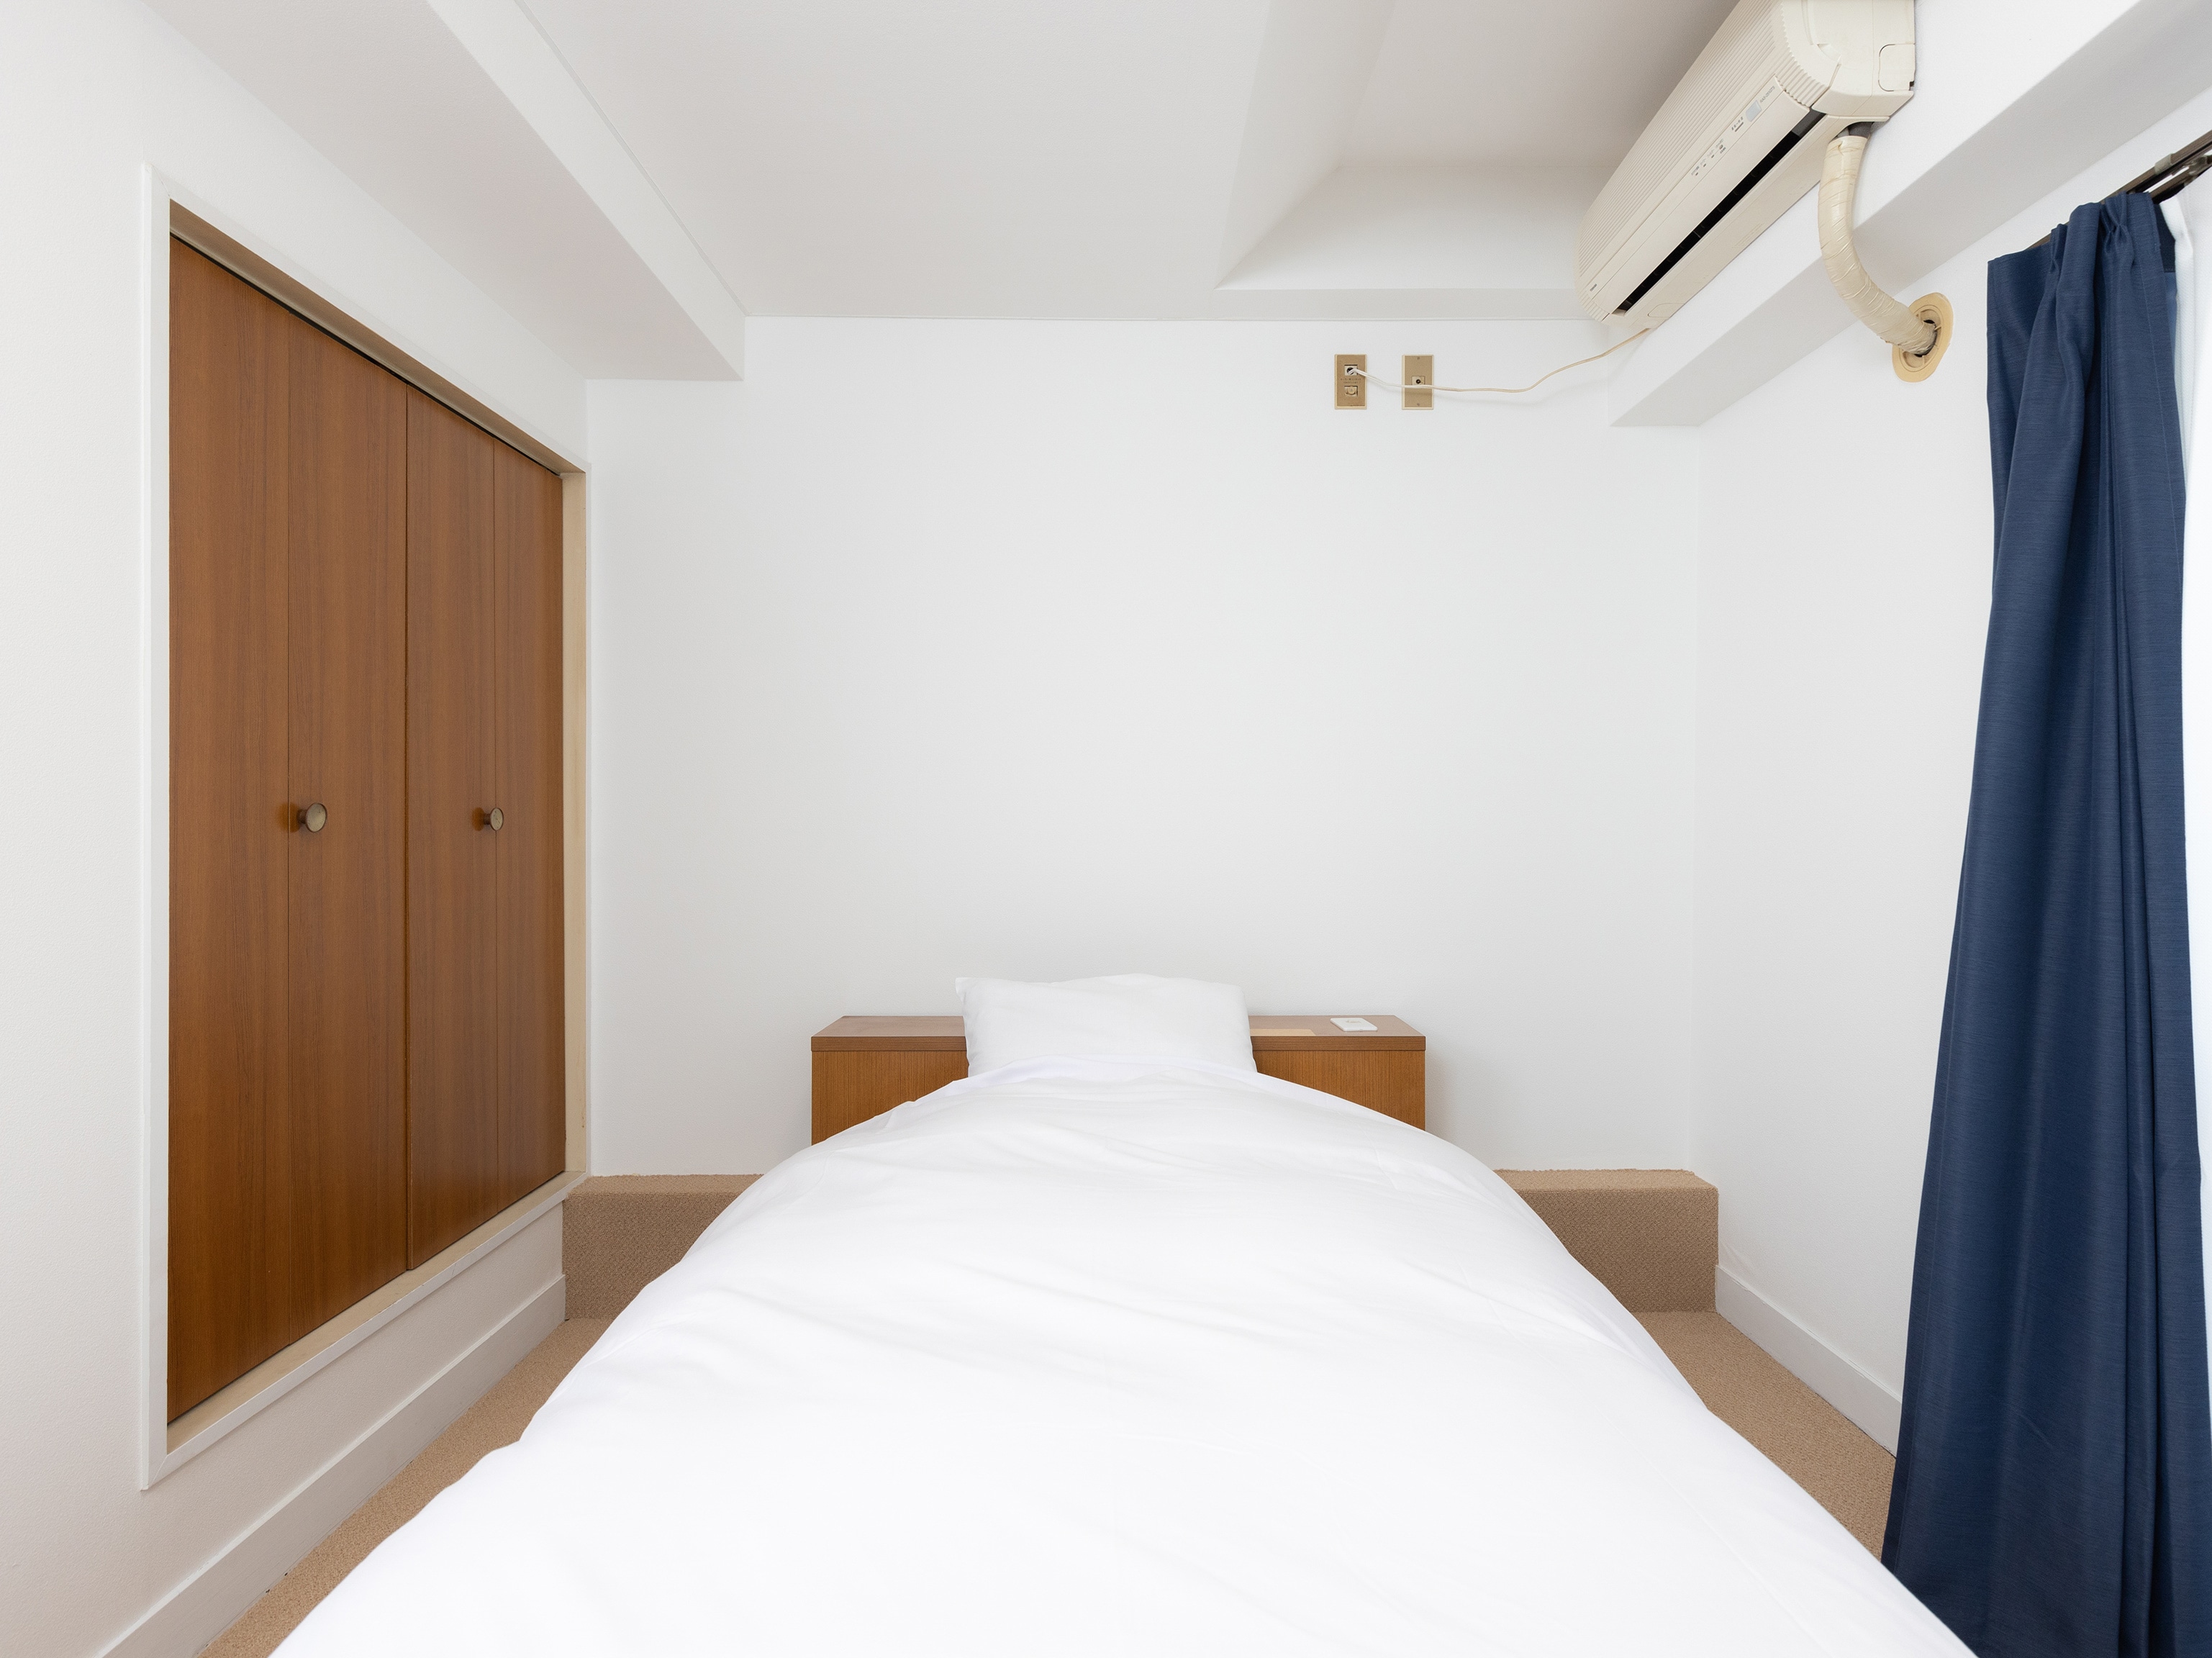 [房间] 单人间 / 19 平方米 / 100 厘米宽的床 & 次; 1 个单元 / 可容纳 1 人 / 所有房间都禁止吸烟